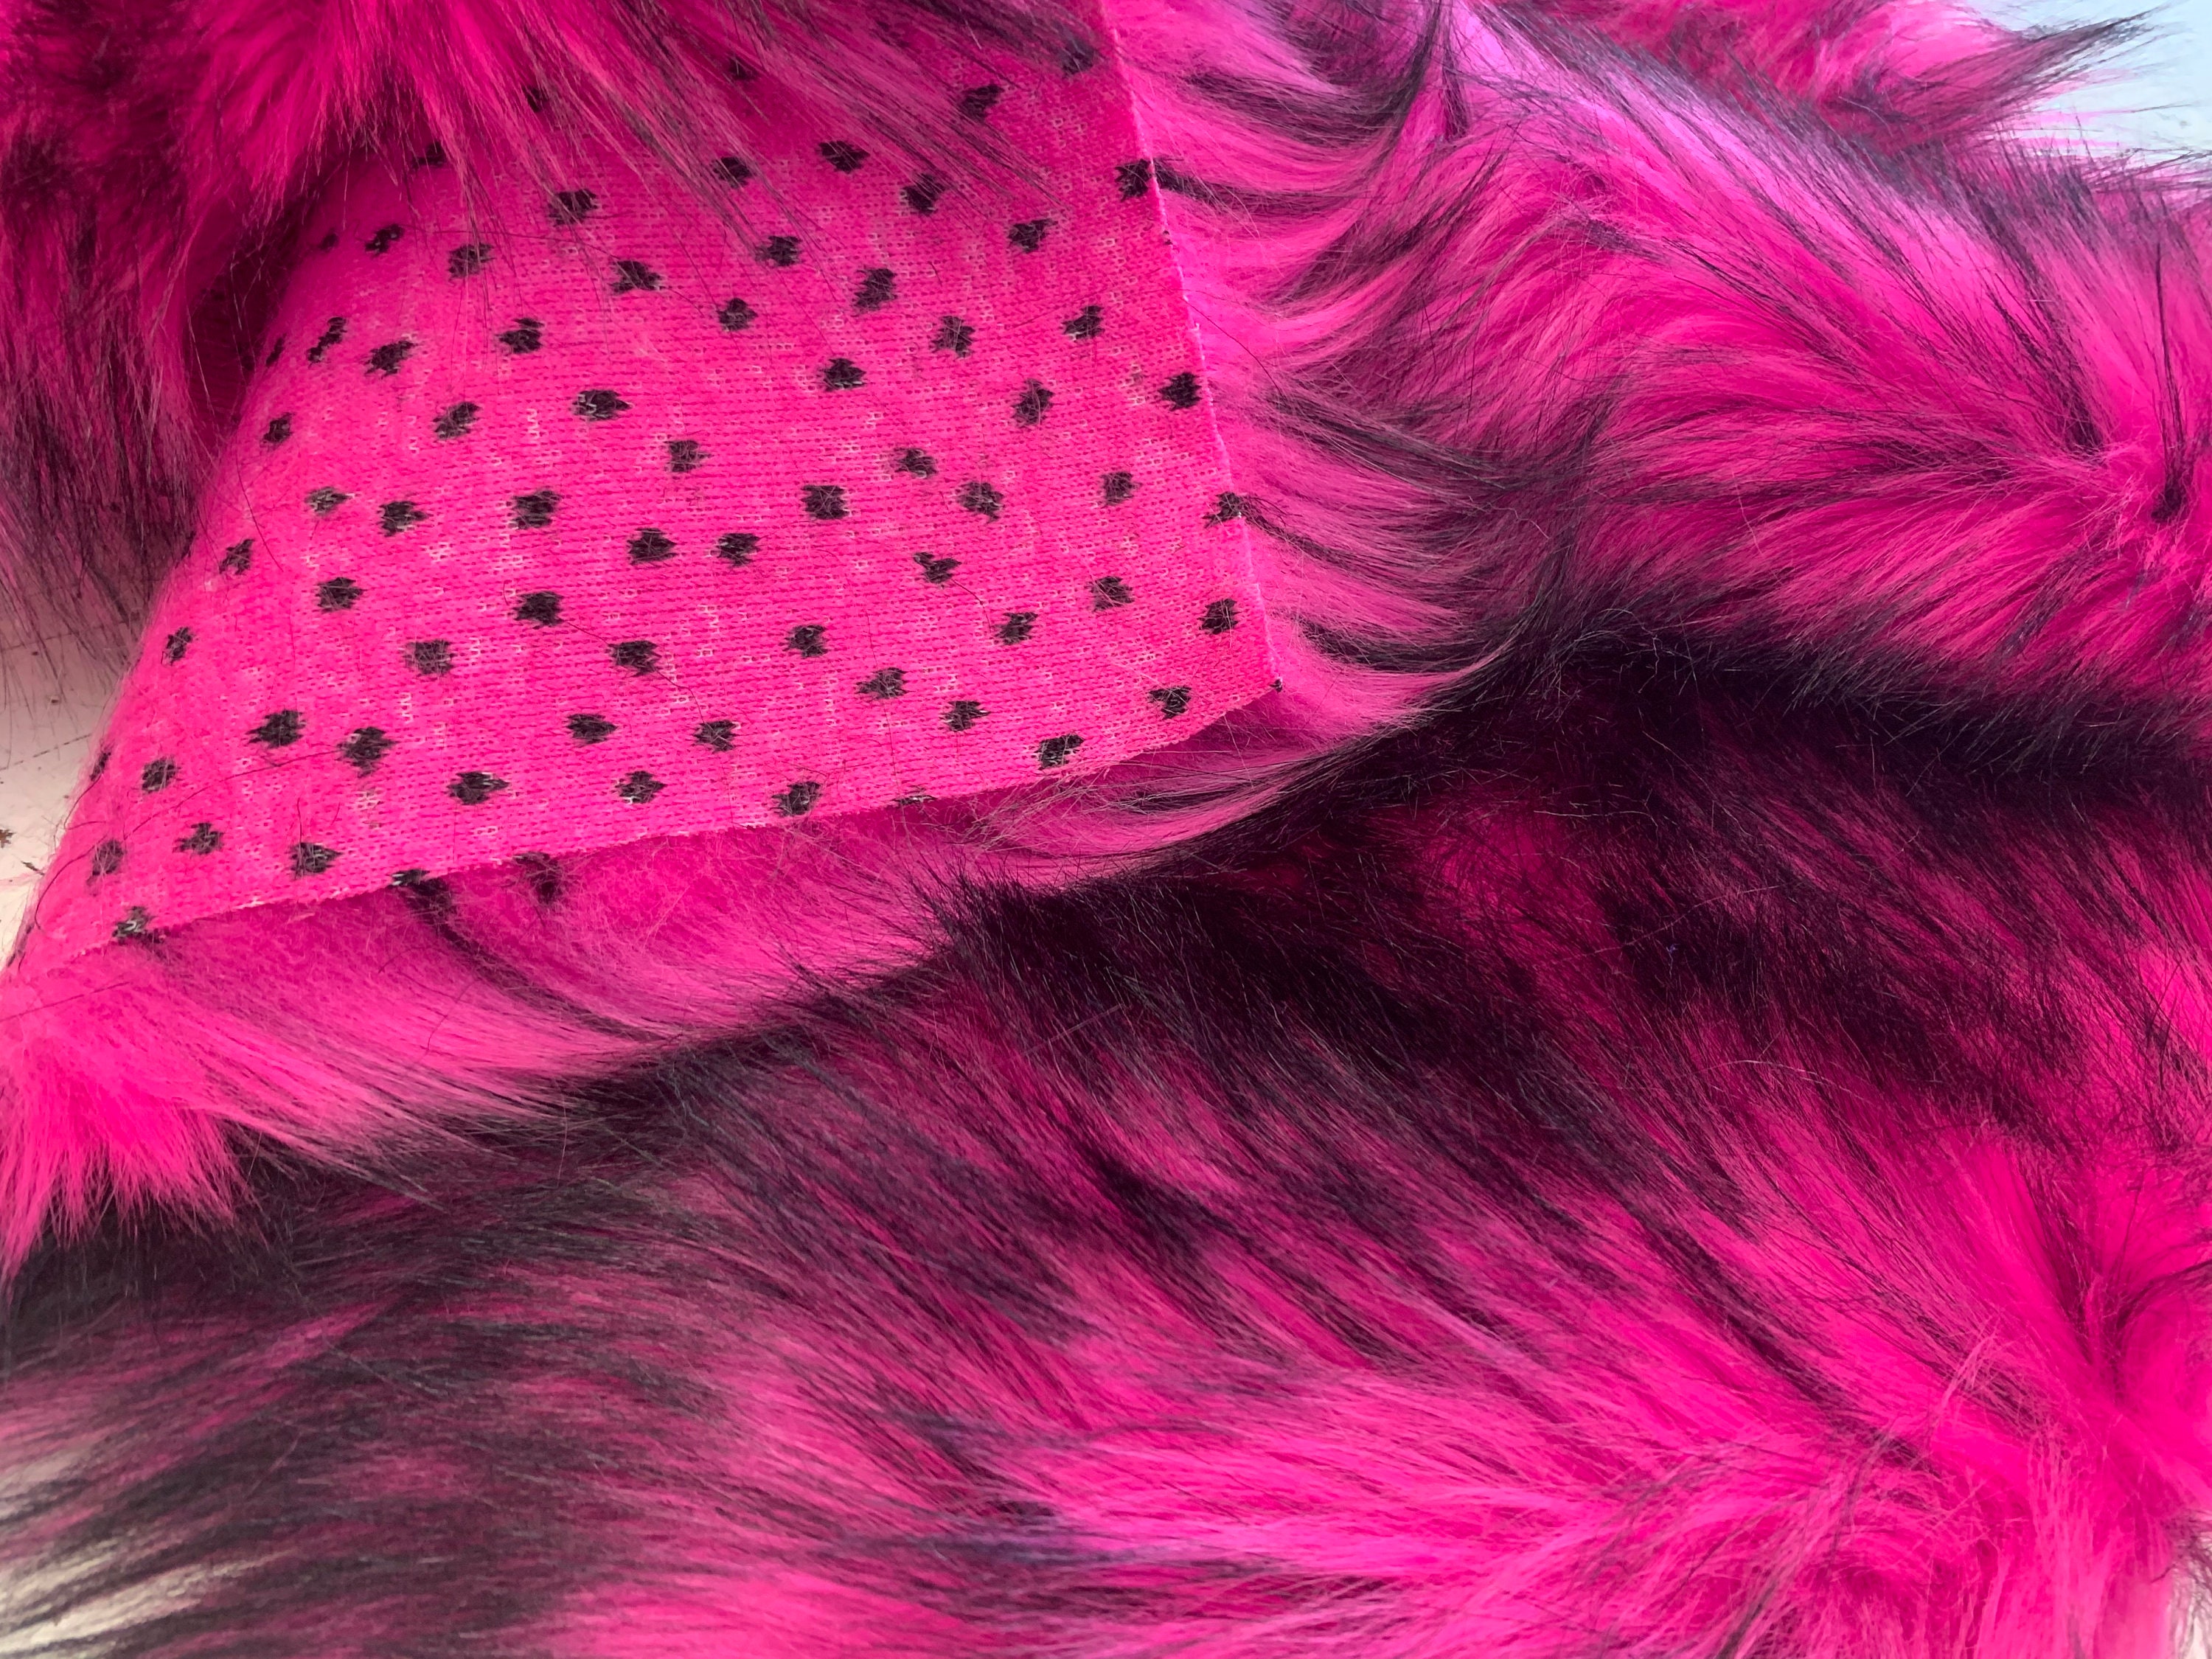 Hot Pink Black Faux Fake Fur Husky Long Pile